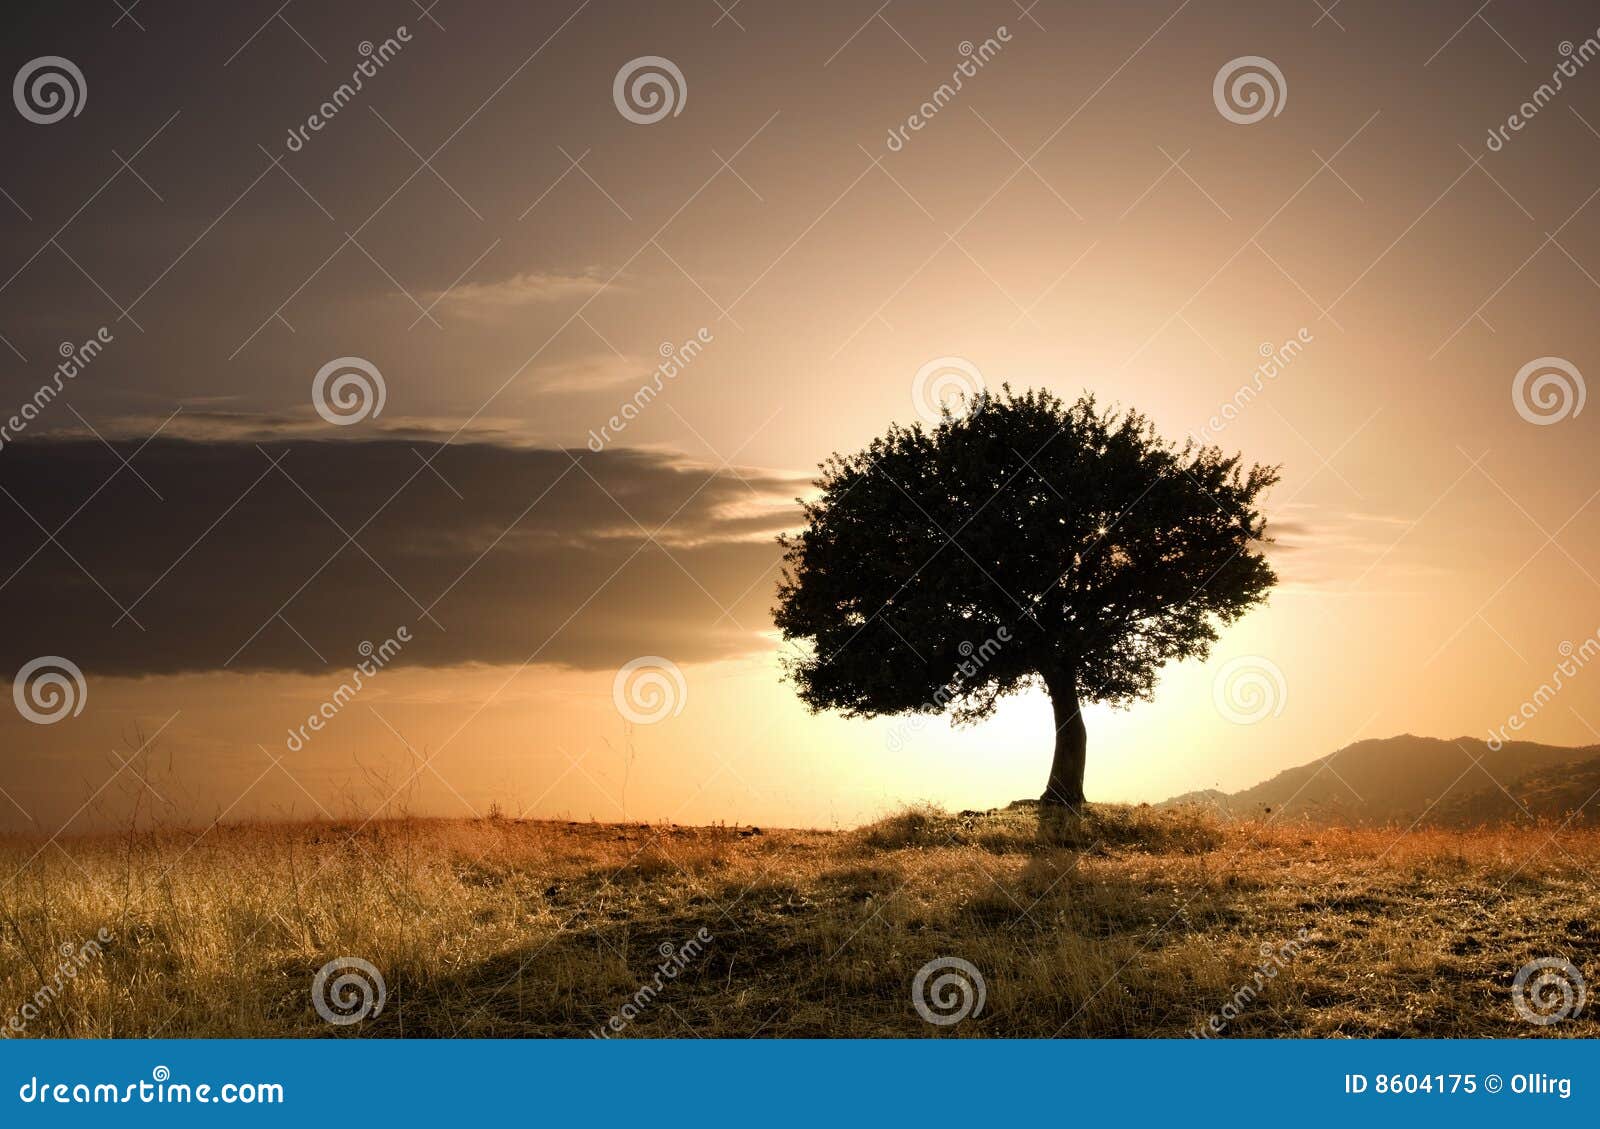 solitary oak tree